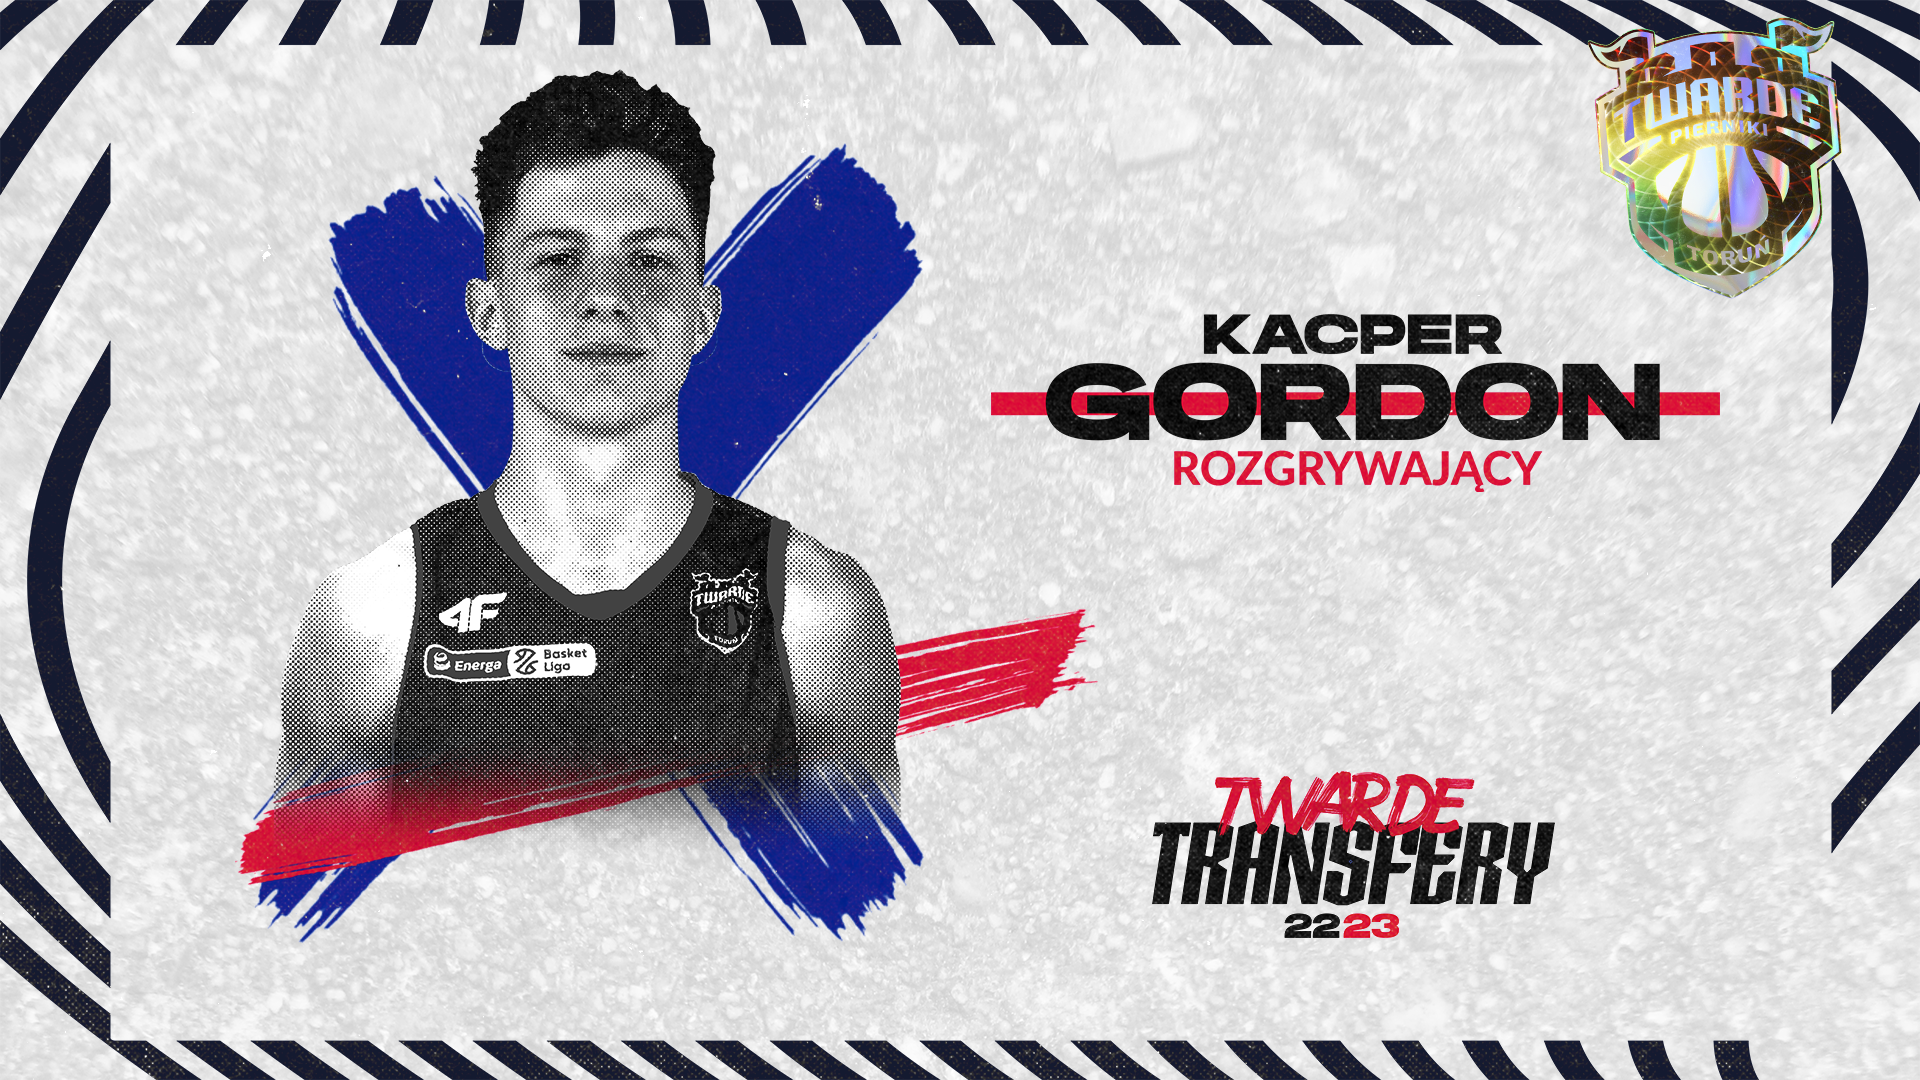 Kacper Gordon zagra w sezonie 2022/23 w drużynie Twardych Pierników!